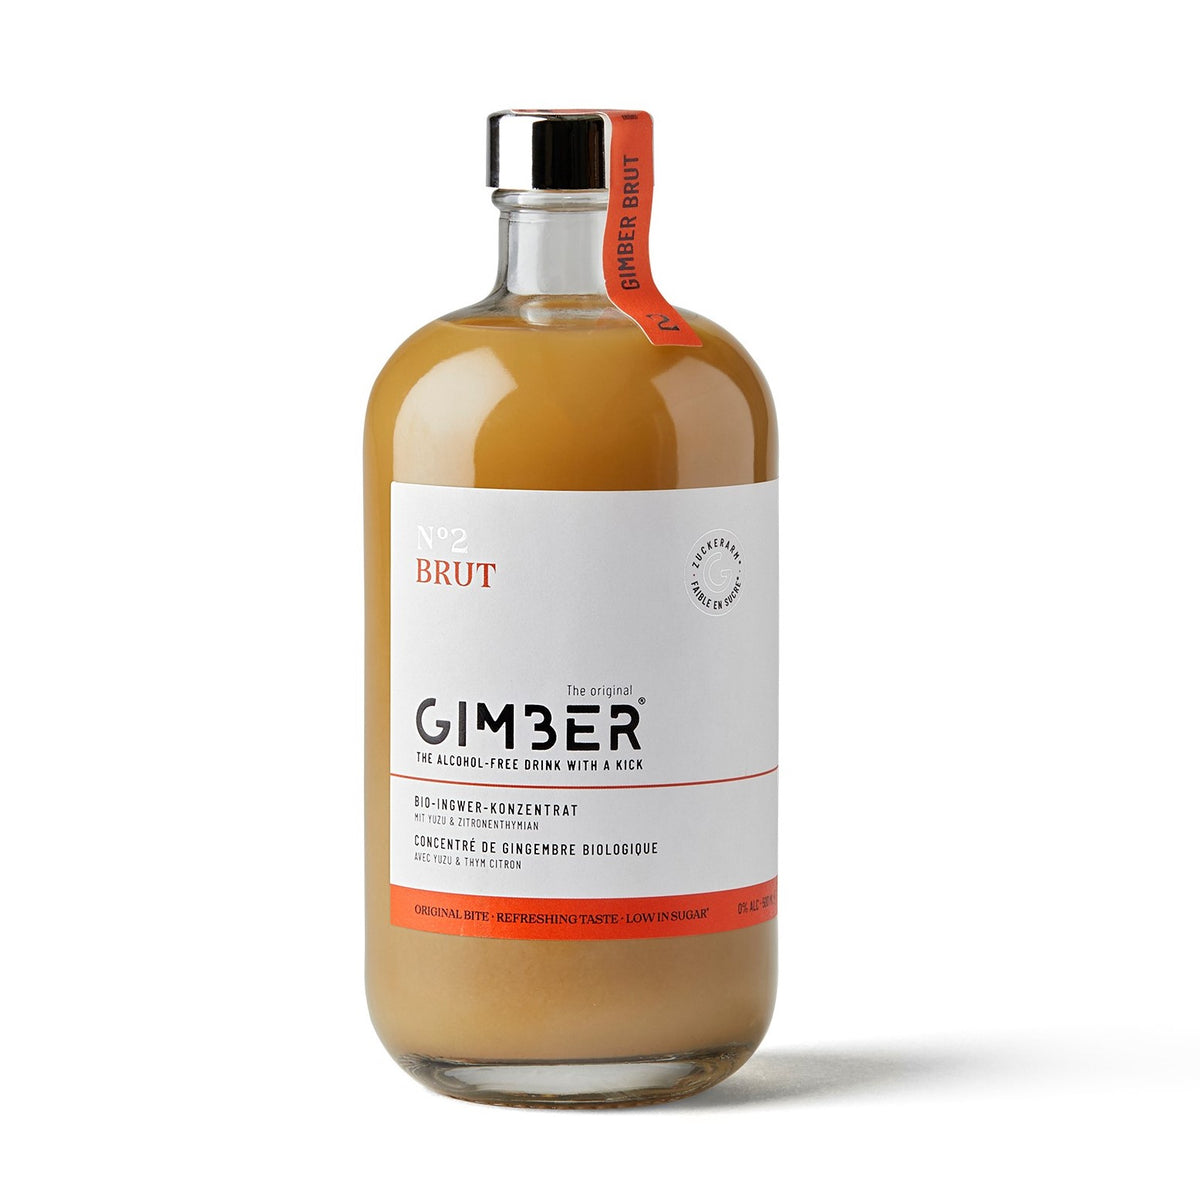 Gimber N°2 Brut - Concentré de gingembre Bio - 500 ml. Collection Producteur GIMBER, concentré de gingembre bio, peut être dégusté dans des cocktails et des mocktails sans alcool. Peut servir aussi d'aide culinaire ou d'aide pâtissière.